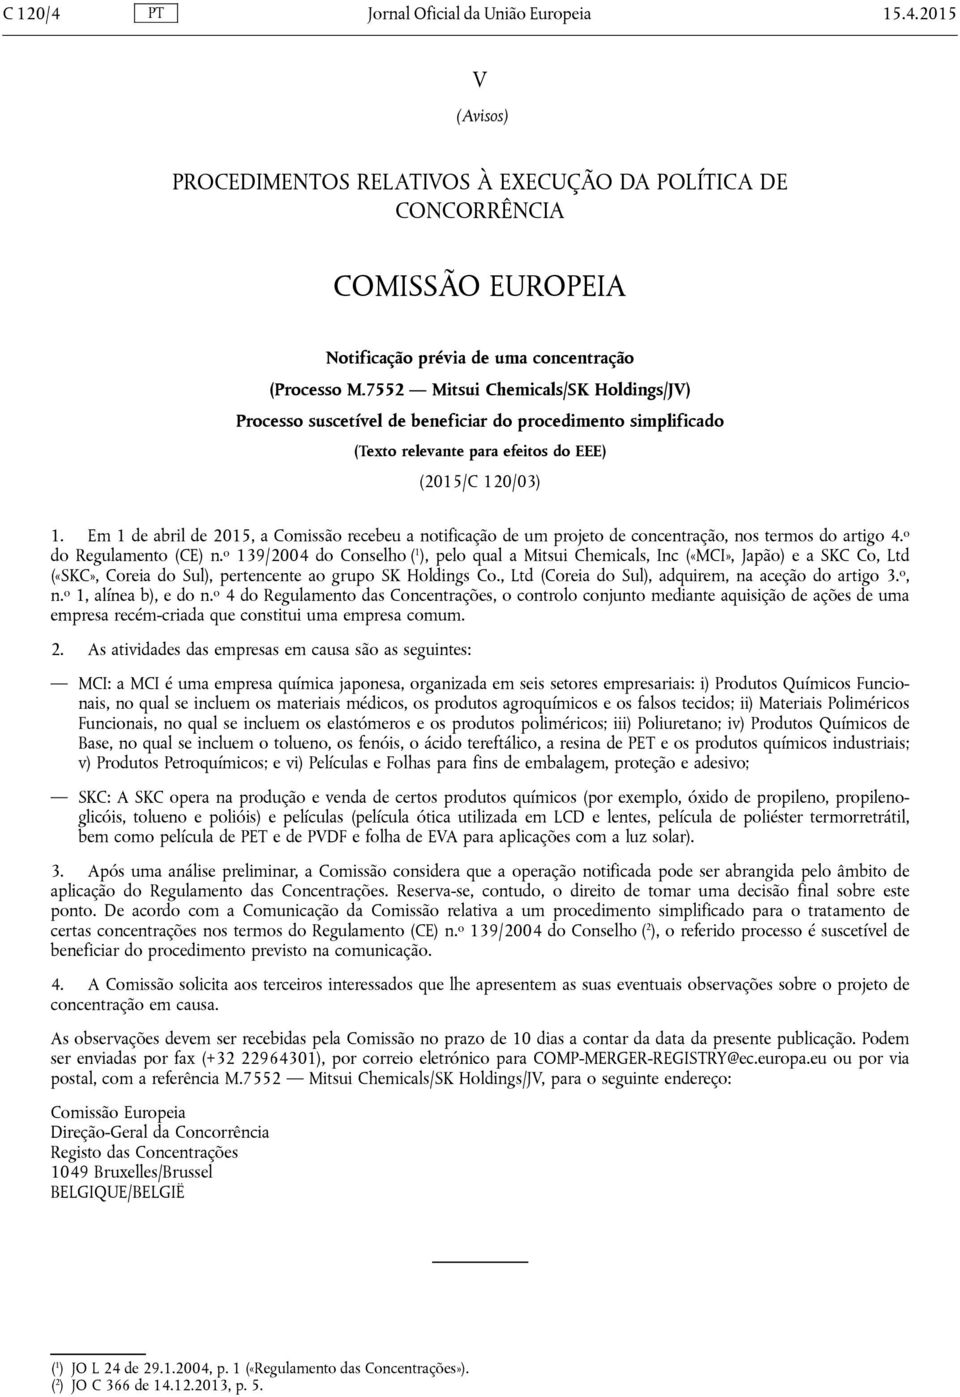 Em 1 de abril de 2015, a Comissão recebeu a notificação de um projeto de concentração, nos termos do artigo 4. o do Regulamento (CE) n.